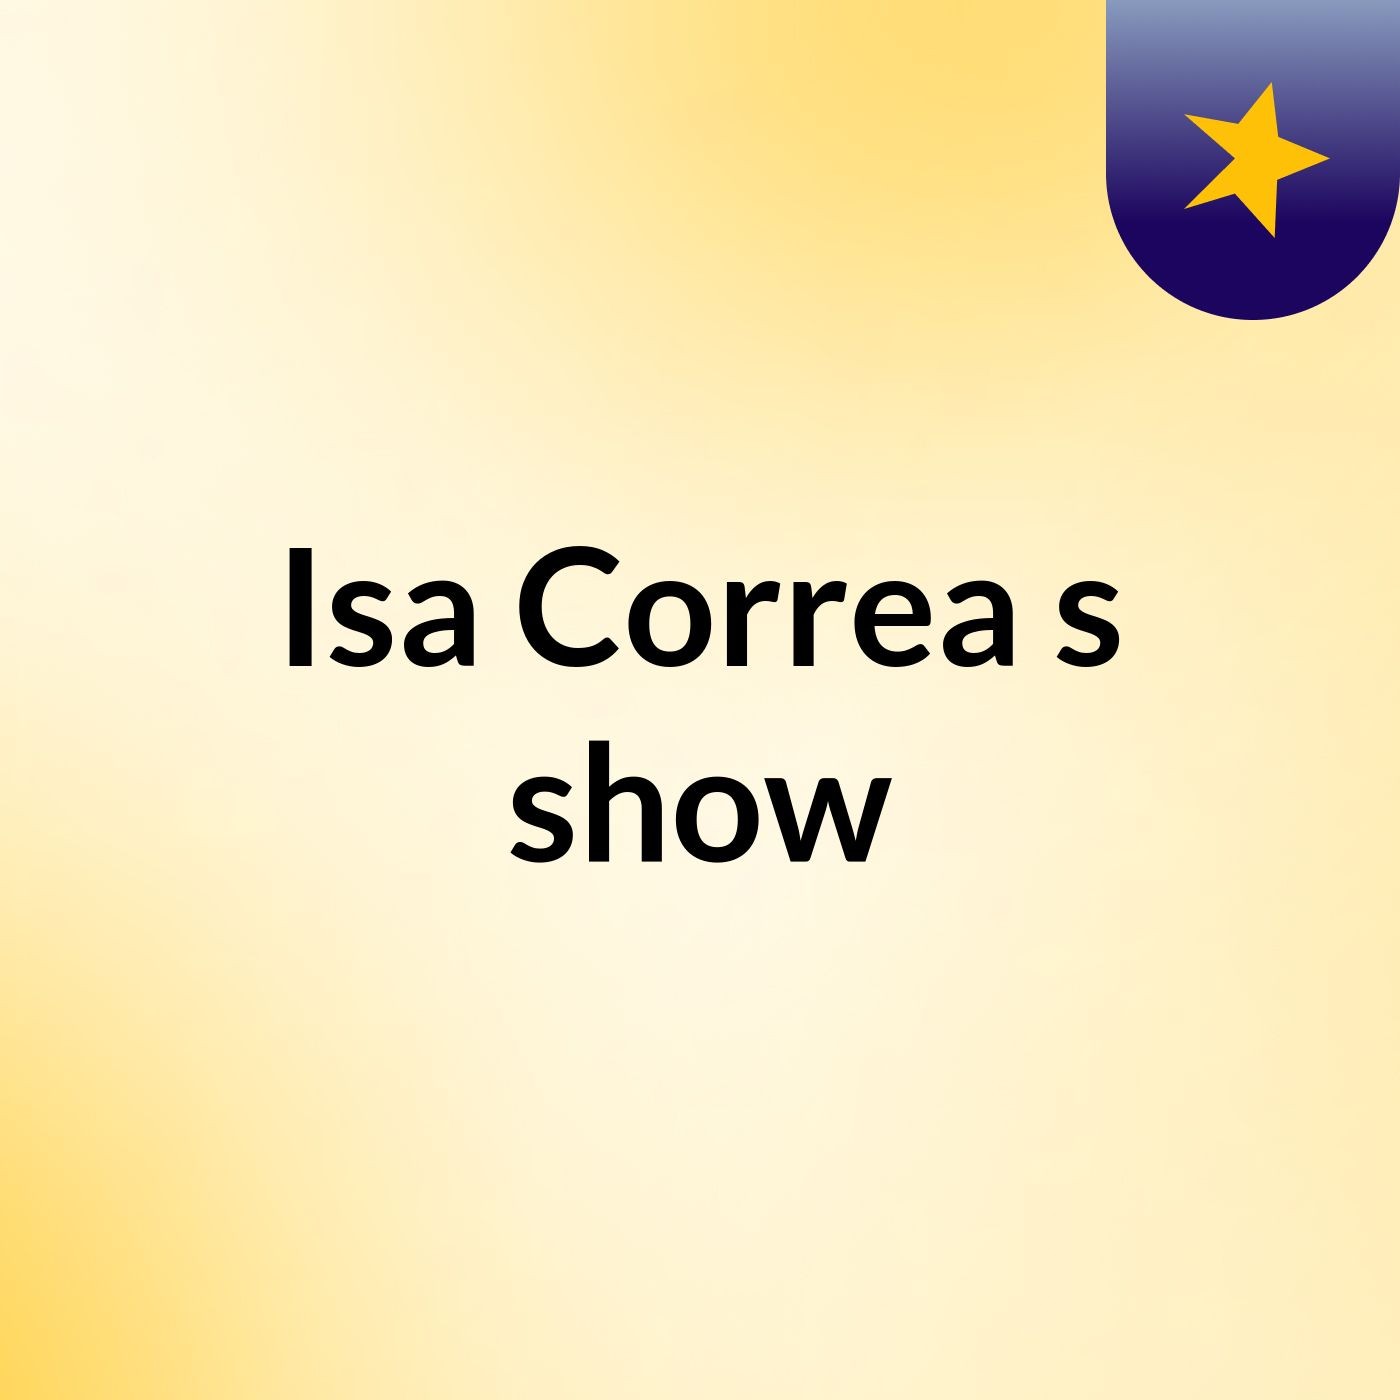 Isa Correa's show